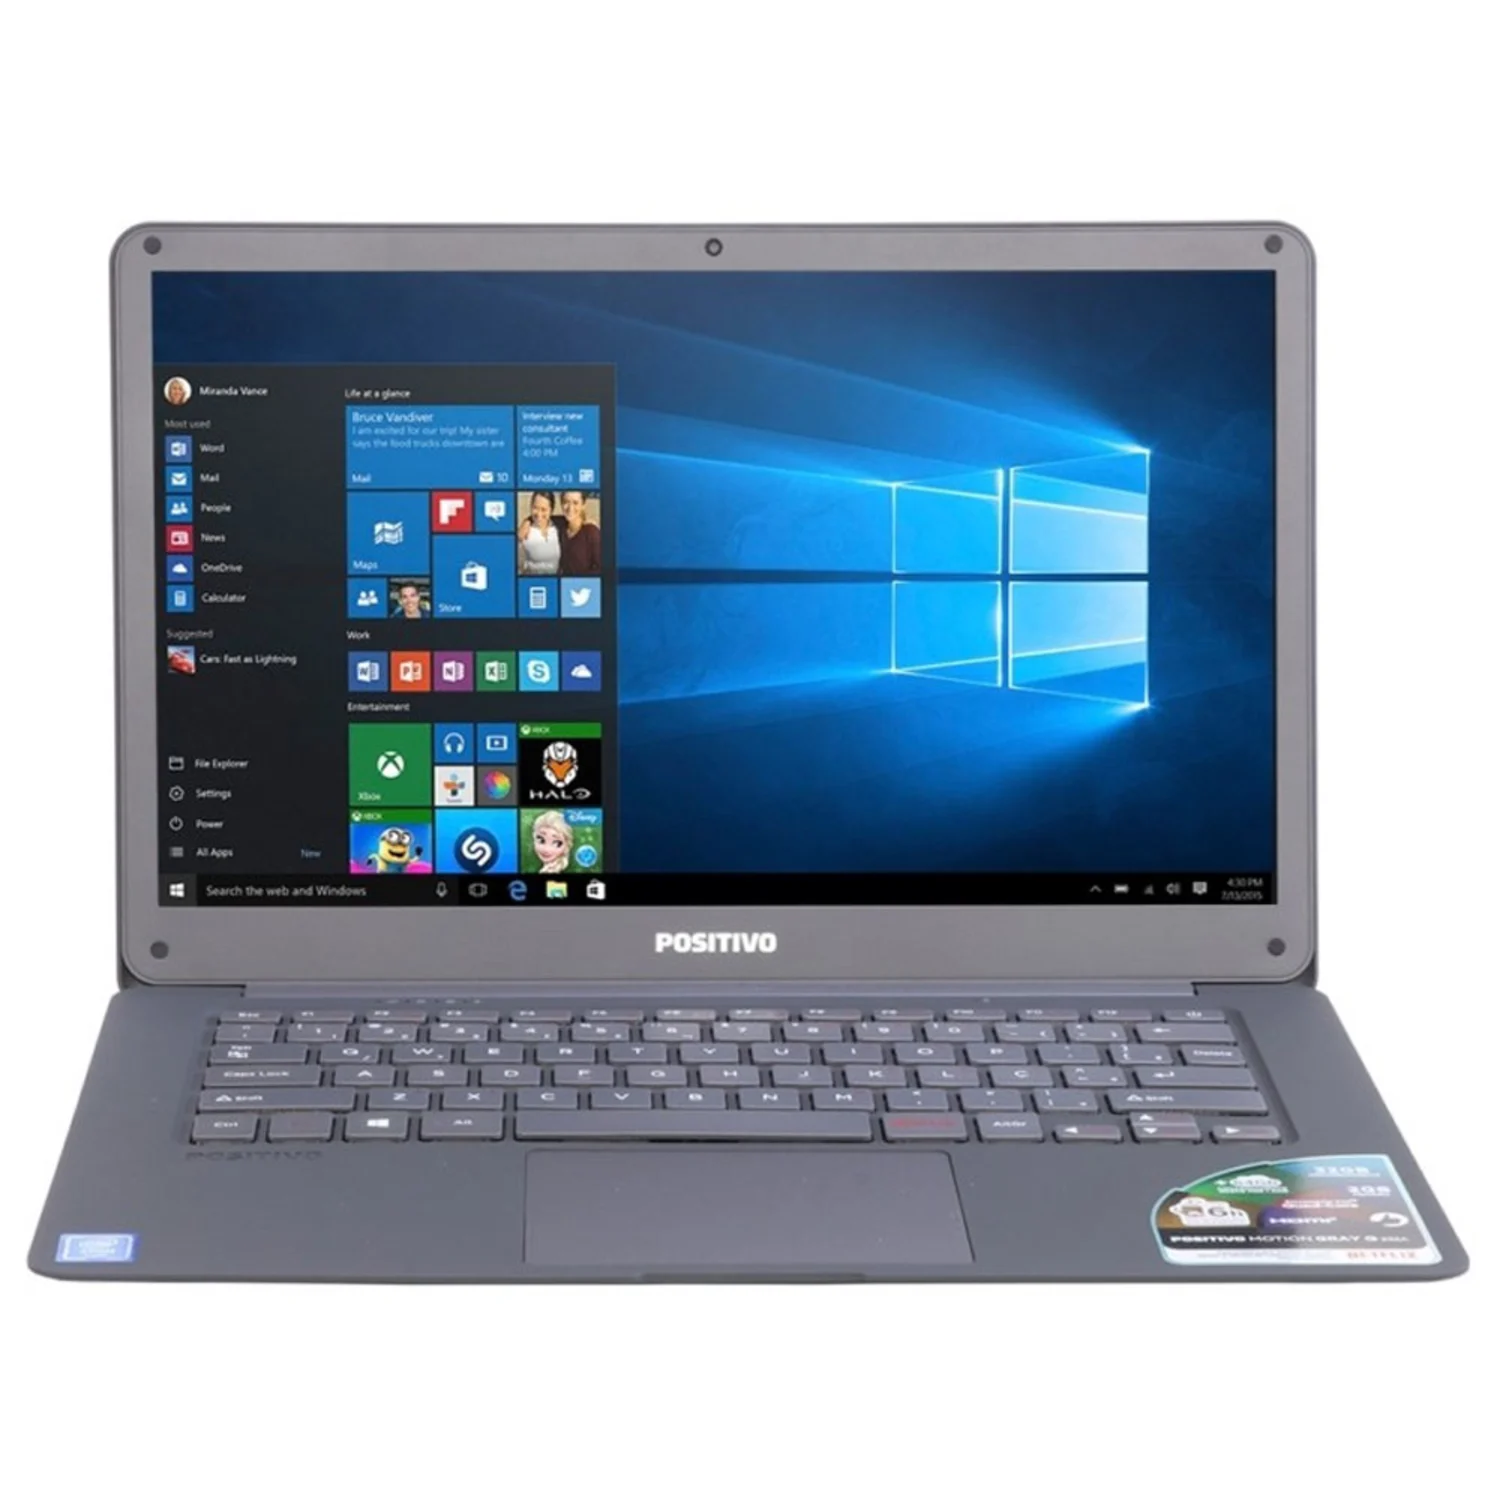 Notebook Positivo Q232A 14.1" Intel Atom X5 32GB 2GB RAM - Cinza